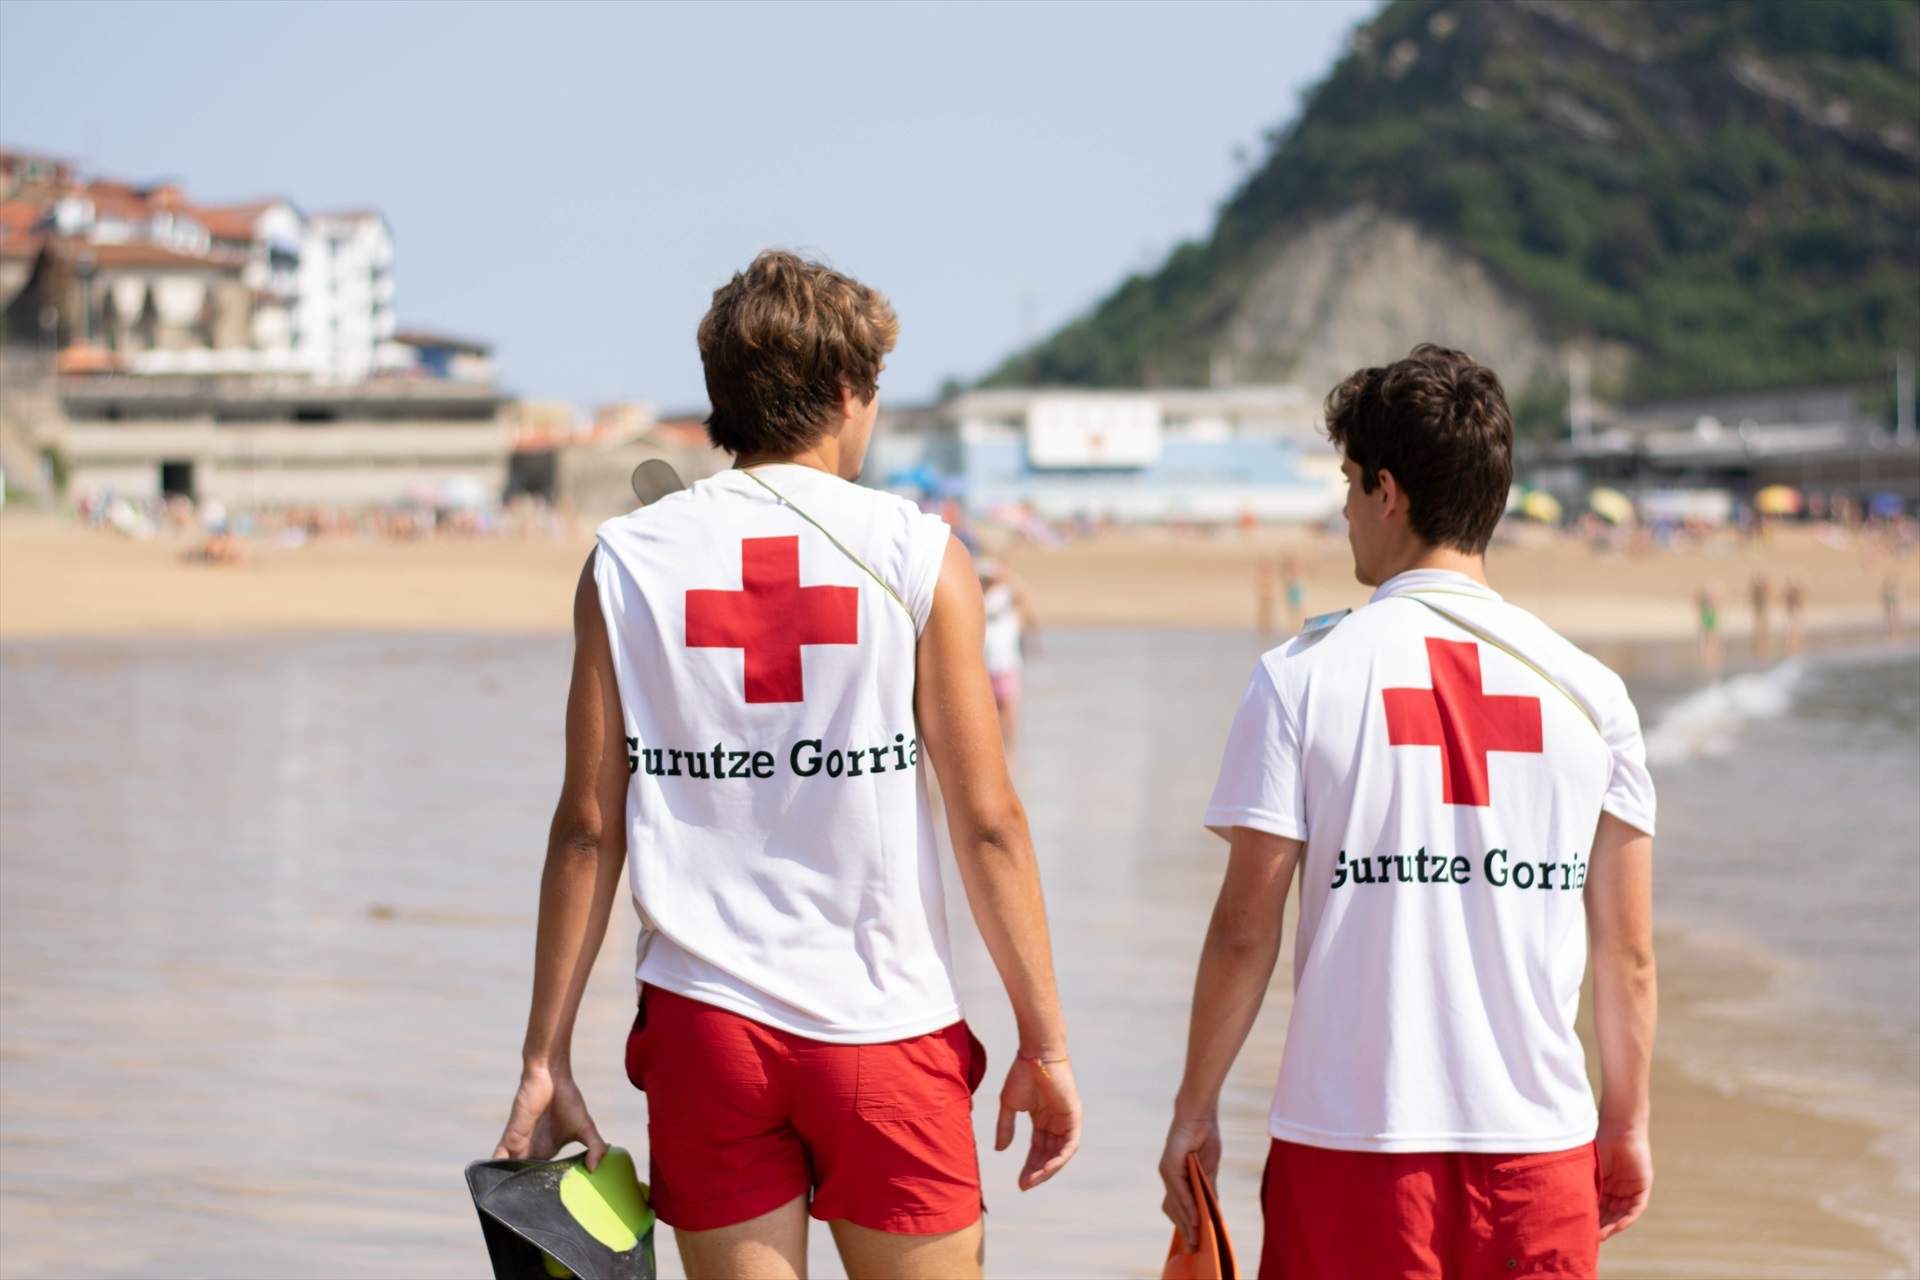 Cruz Roja intensifica la vigilancia en playas ante la última ola de ahogamientos